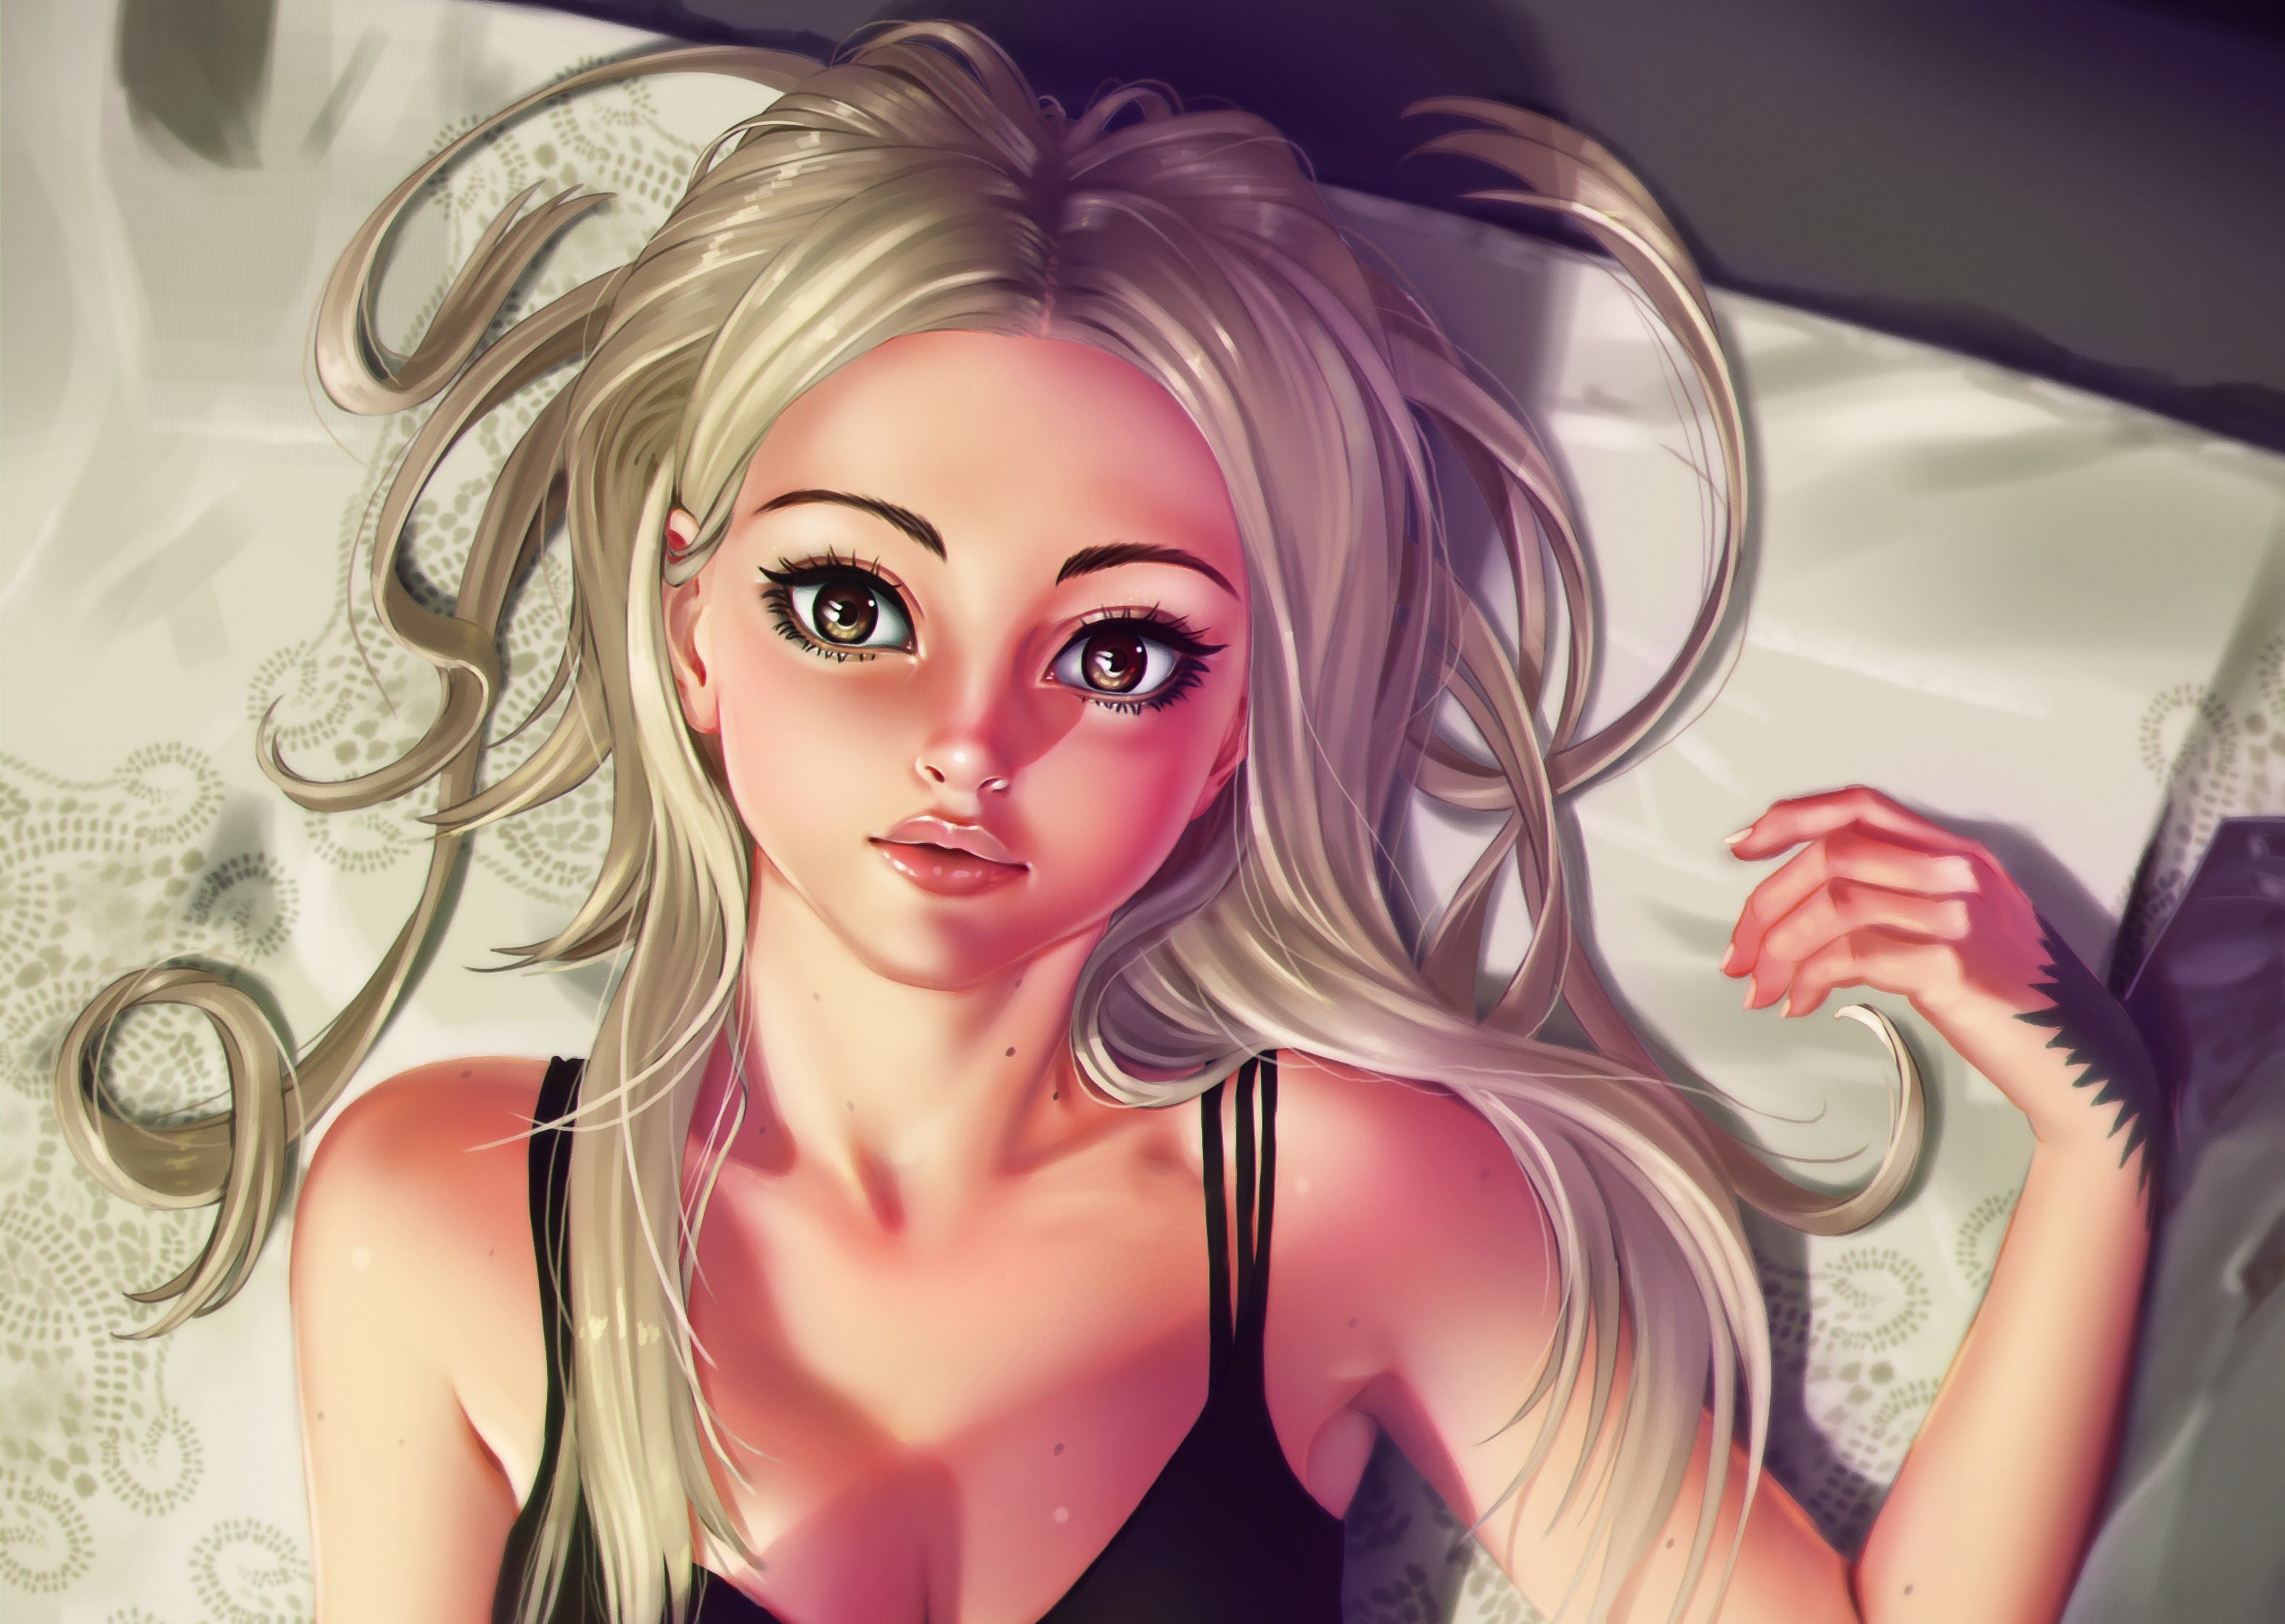 Blonde Hair Digital Art , HD Wallpaper & Backgrounds